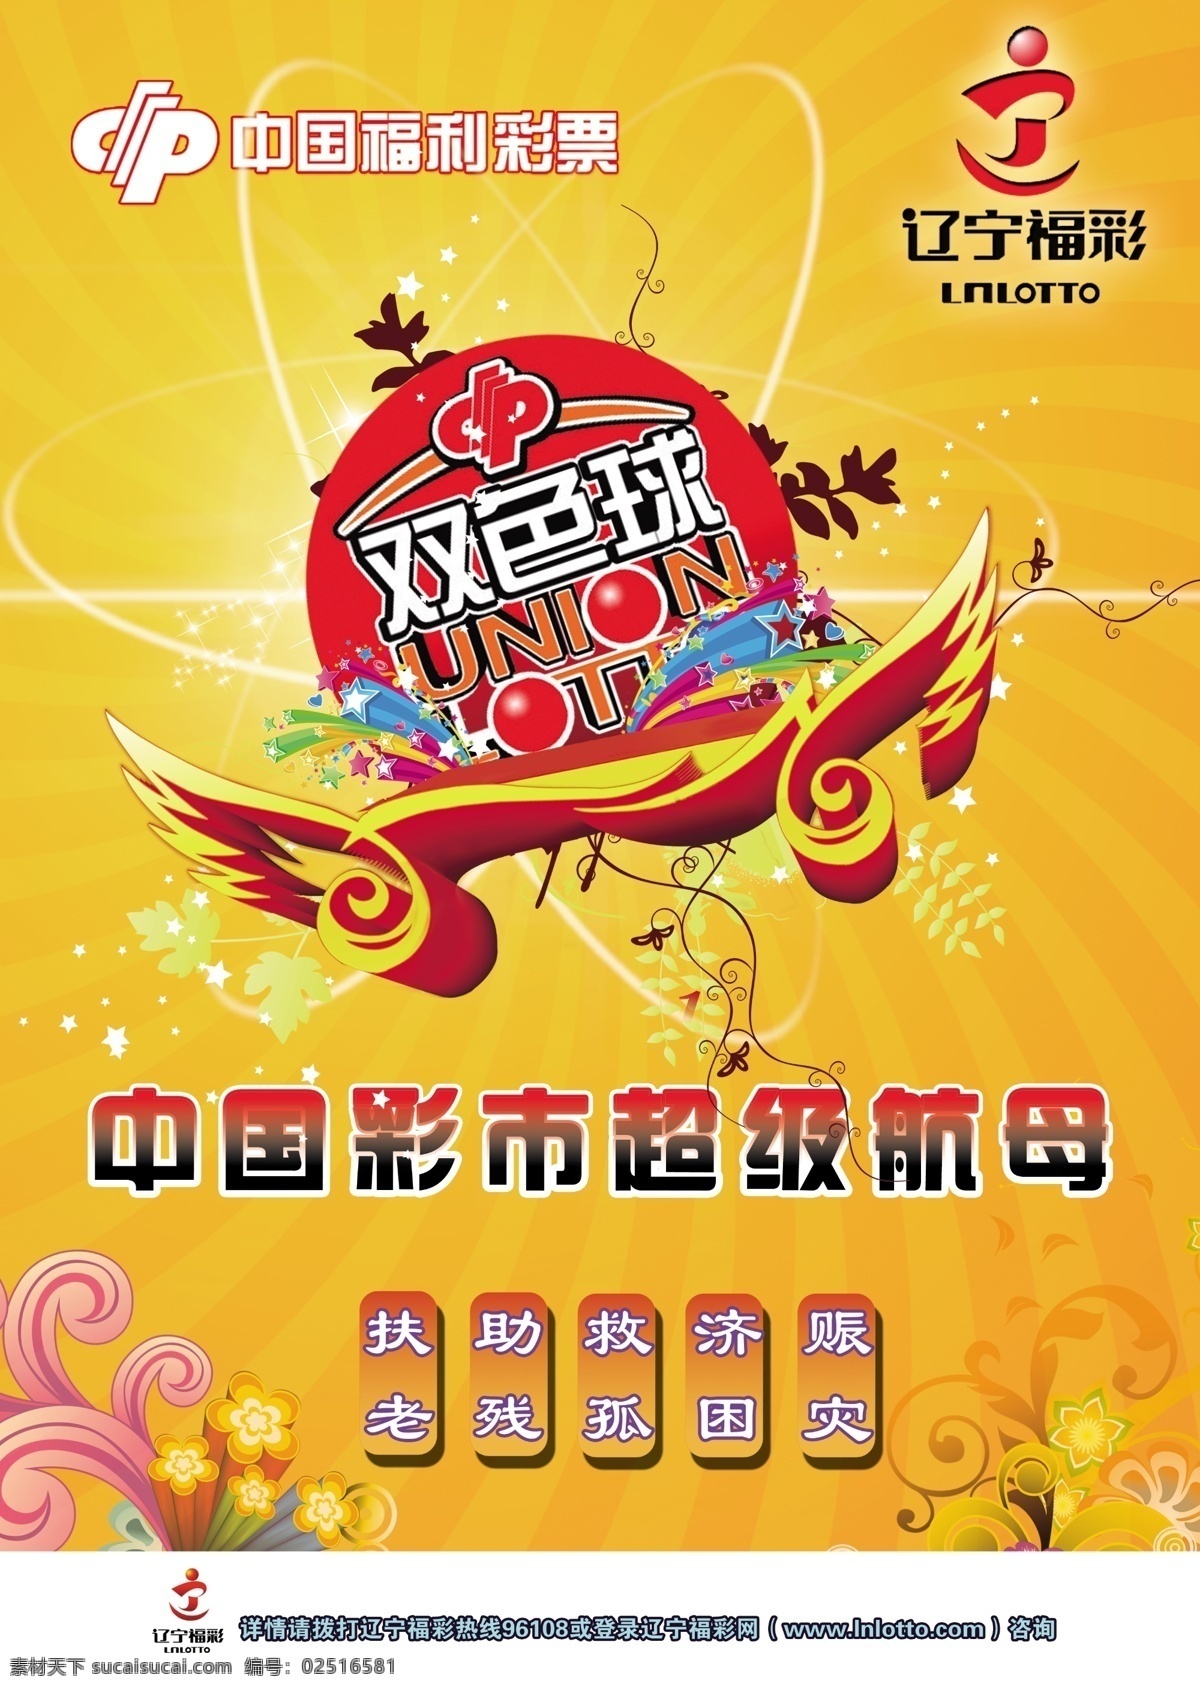 中国福利彩票 中奖 双色球开海报 双色球 尊贵 飞翔 广告设计模板 源文件